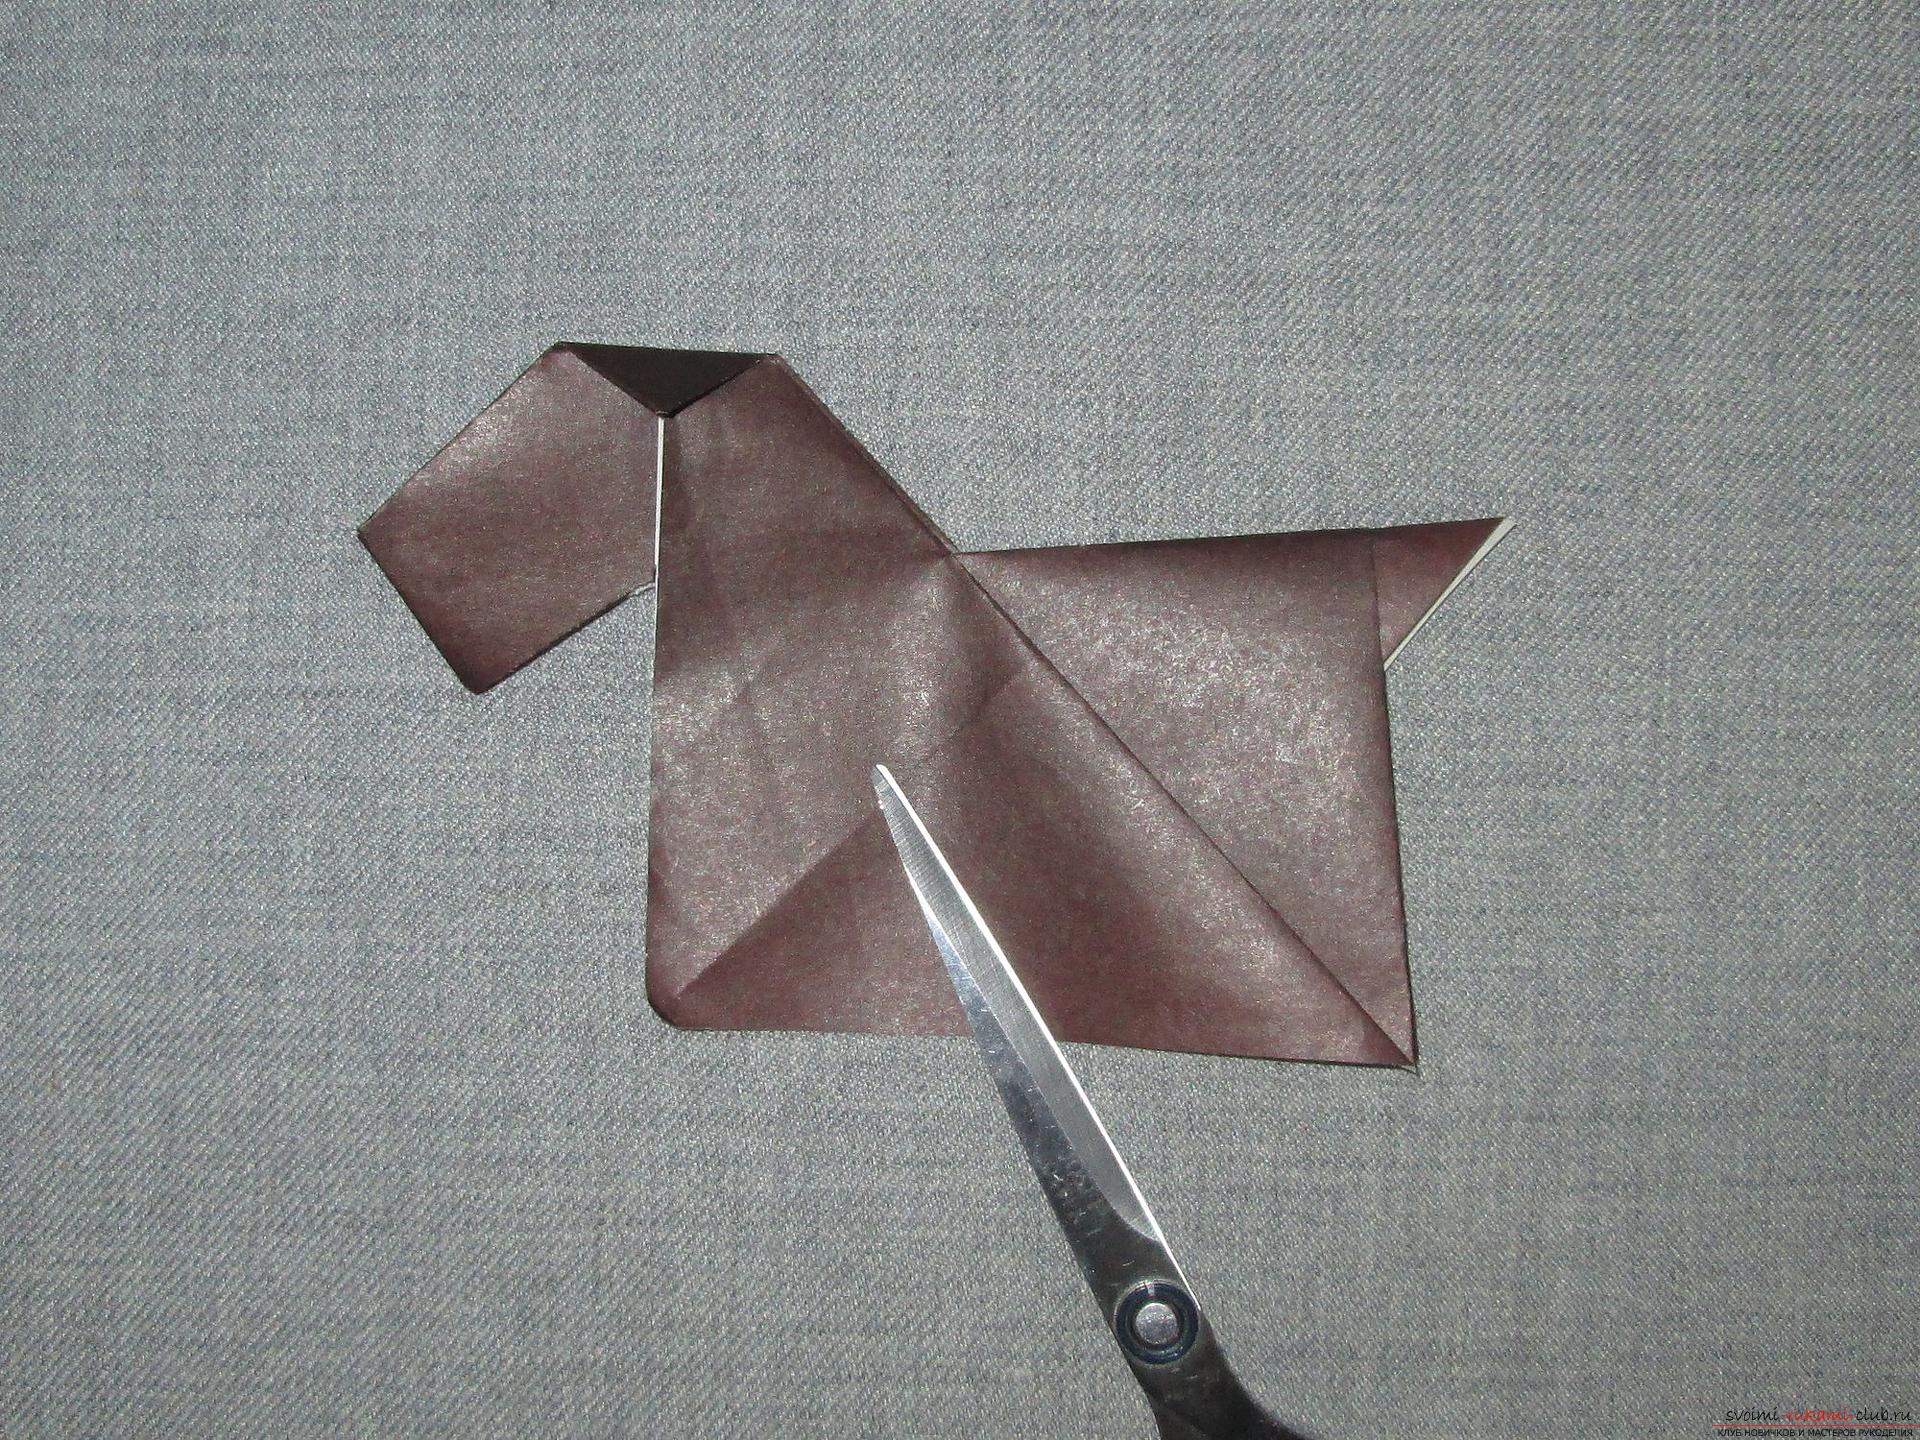 Этот подробный мастер-класс с фото и описание научит как сделать оригами для начинающих - оригами-собаку из бумаги.. Фото №14